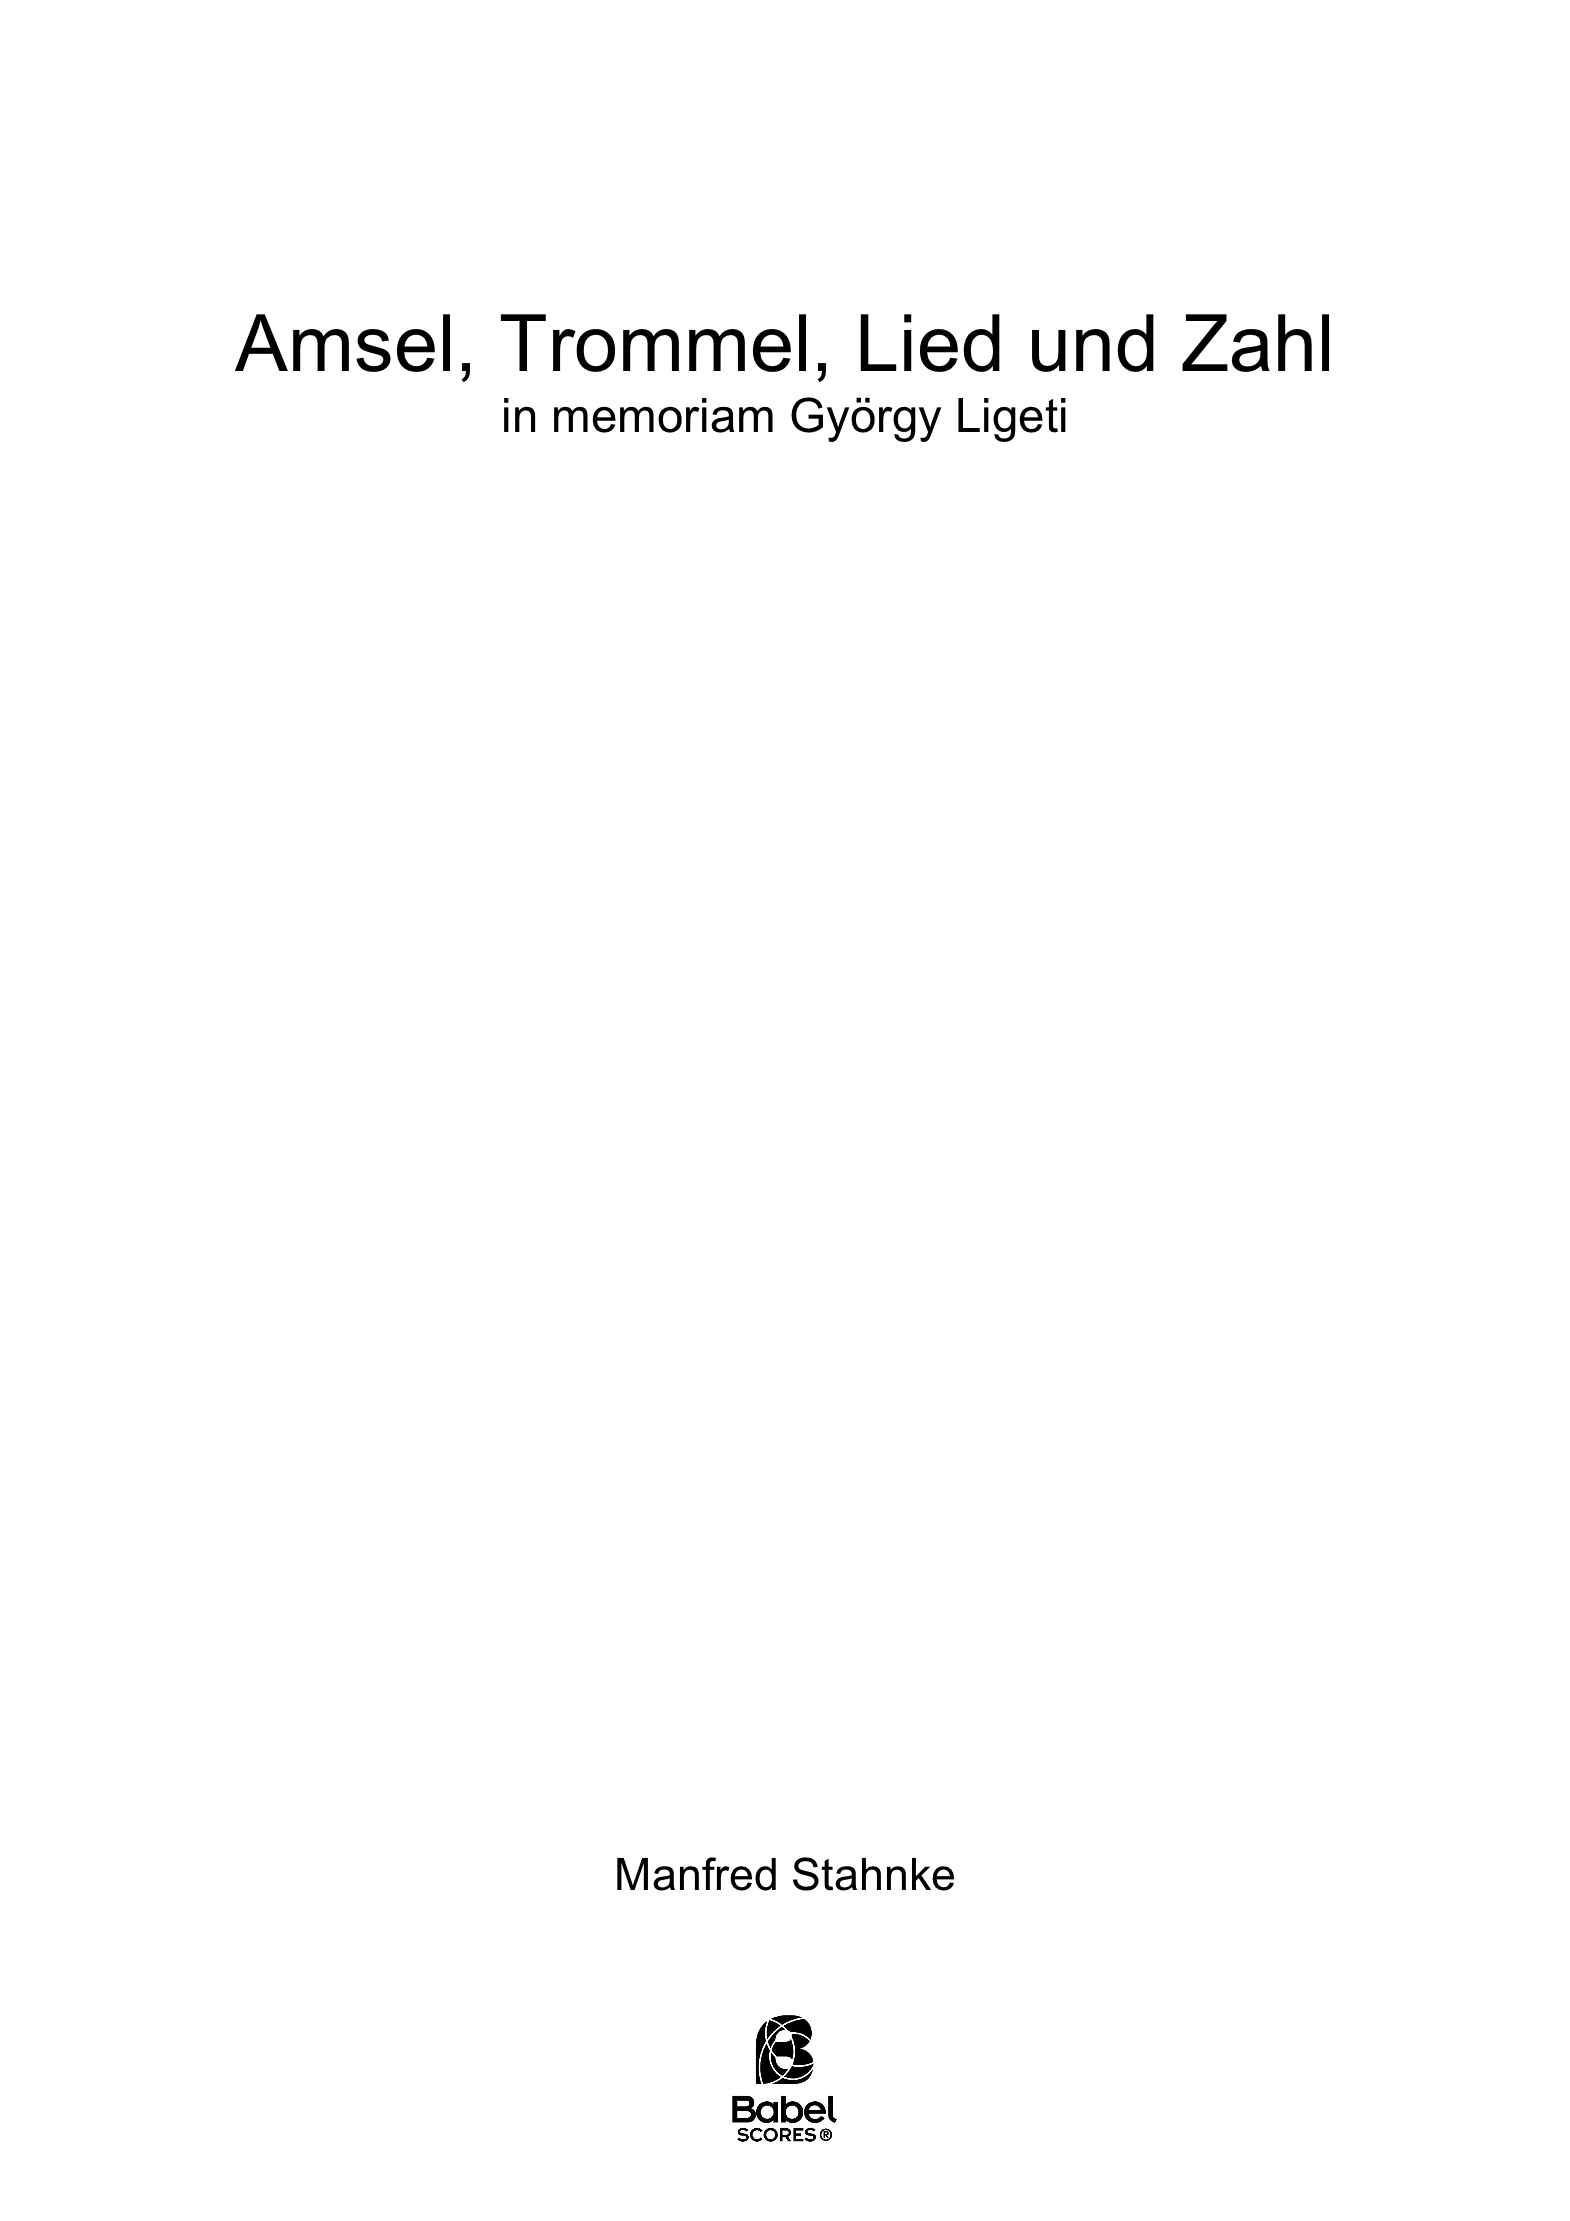 amsel trommel lied und zahl A4 z 2 156 1 223